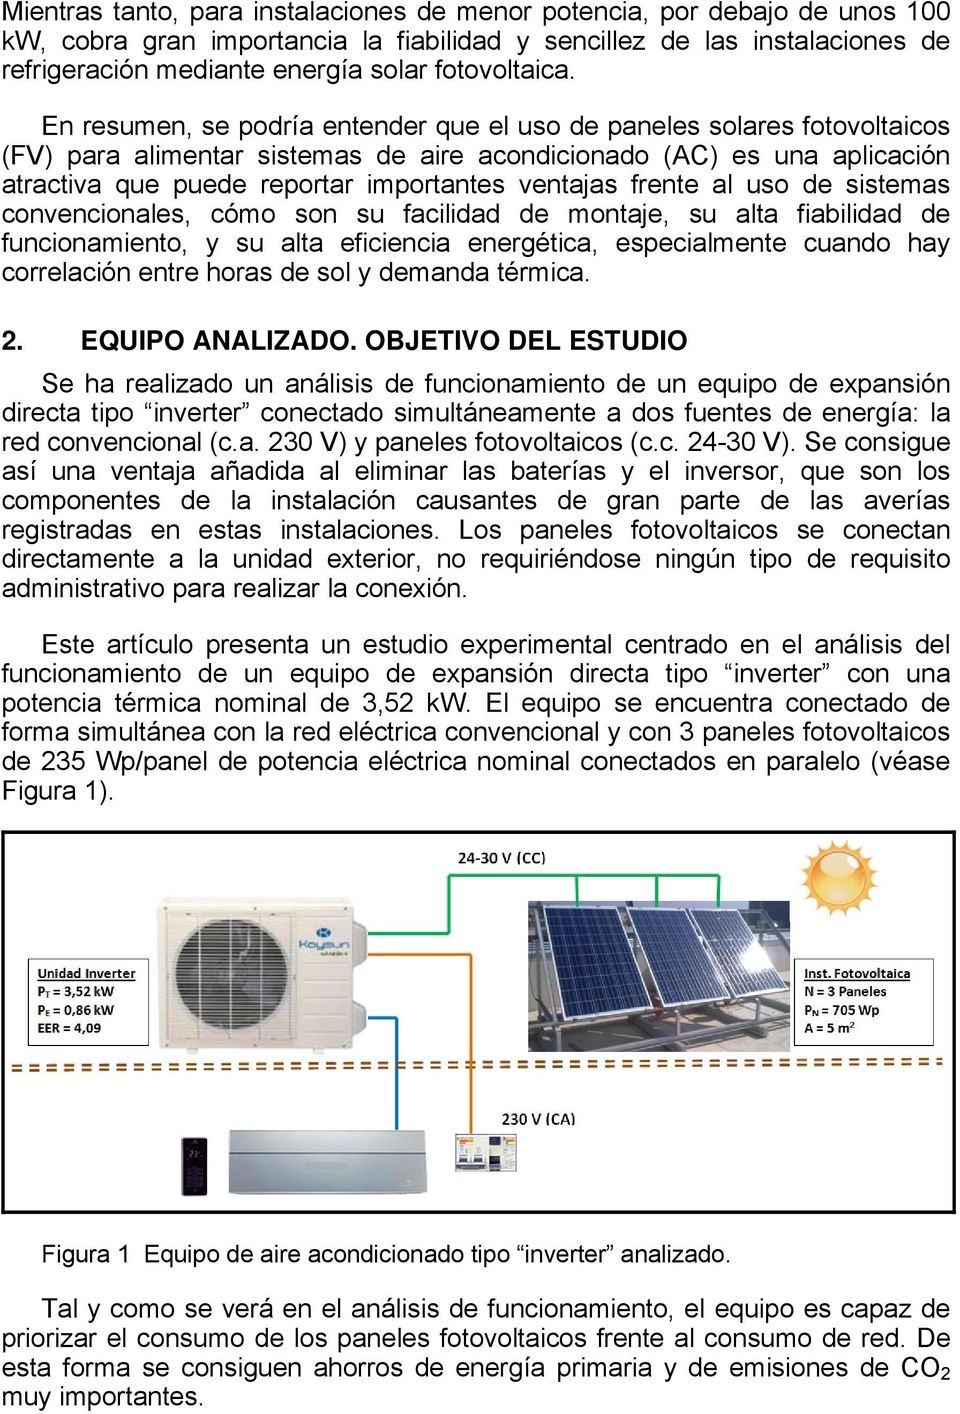 En resumen, se podría entender que el uso de paneles solares fotovoltaicos (FV) para alimentar sistemas de aire acondicionado (AC) es una aplicación atractiva que puede reportar importantes ventajas